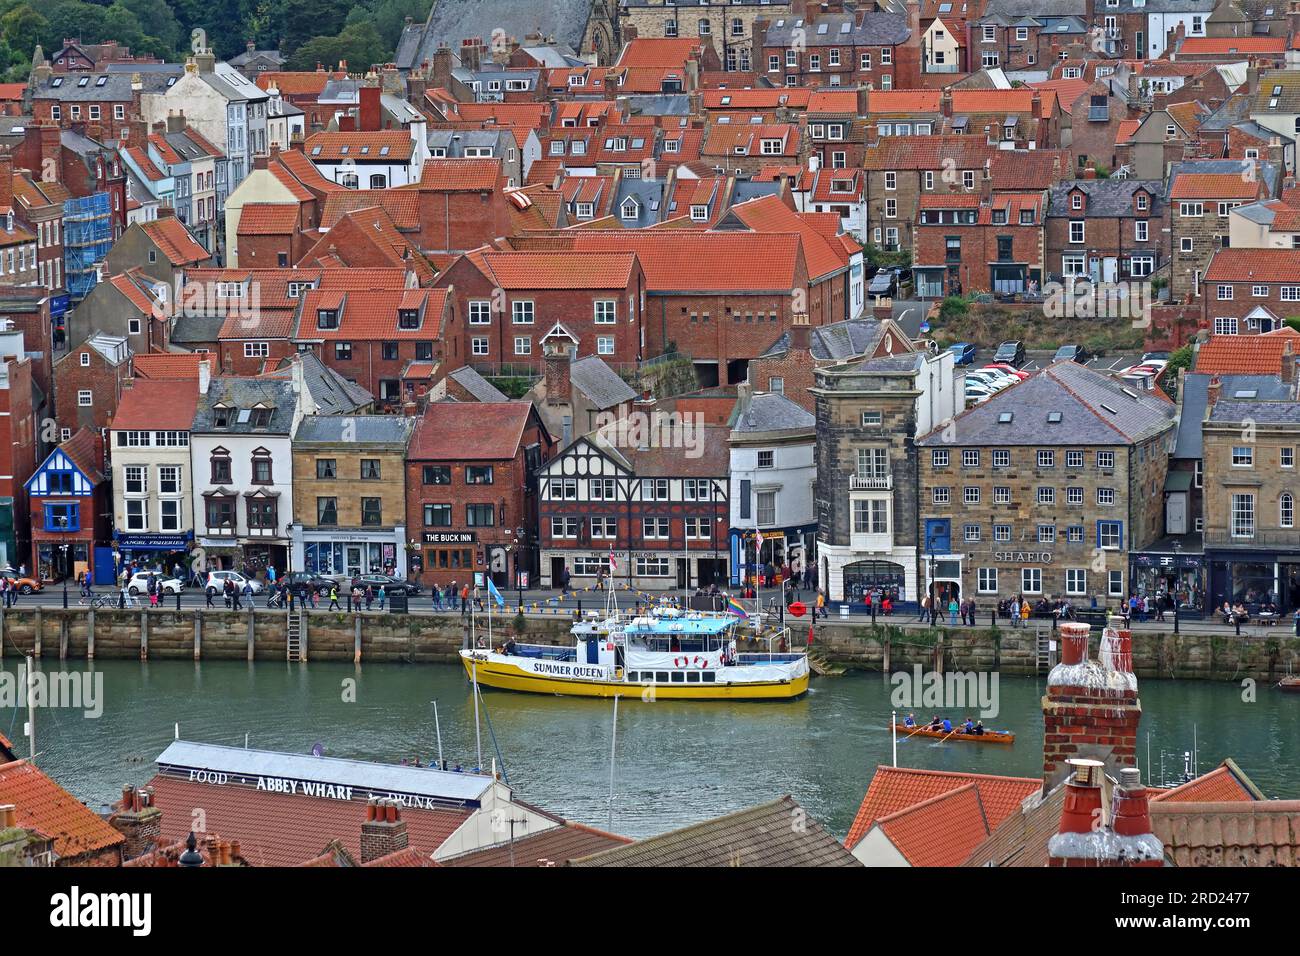 Vue sur West Cliff, la ville de Whitby, le port et les amarres, y compris un bateau de pêche jaune amarré, North Yorkshire, Angleterre, Royaume-Uni, YO21 3PU Banque D'Images